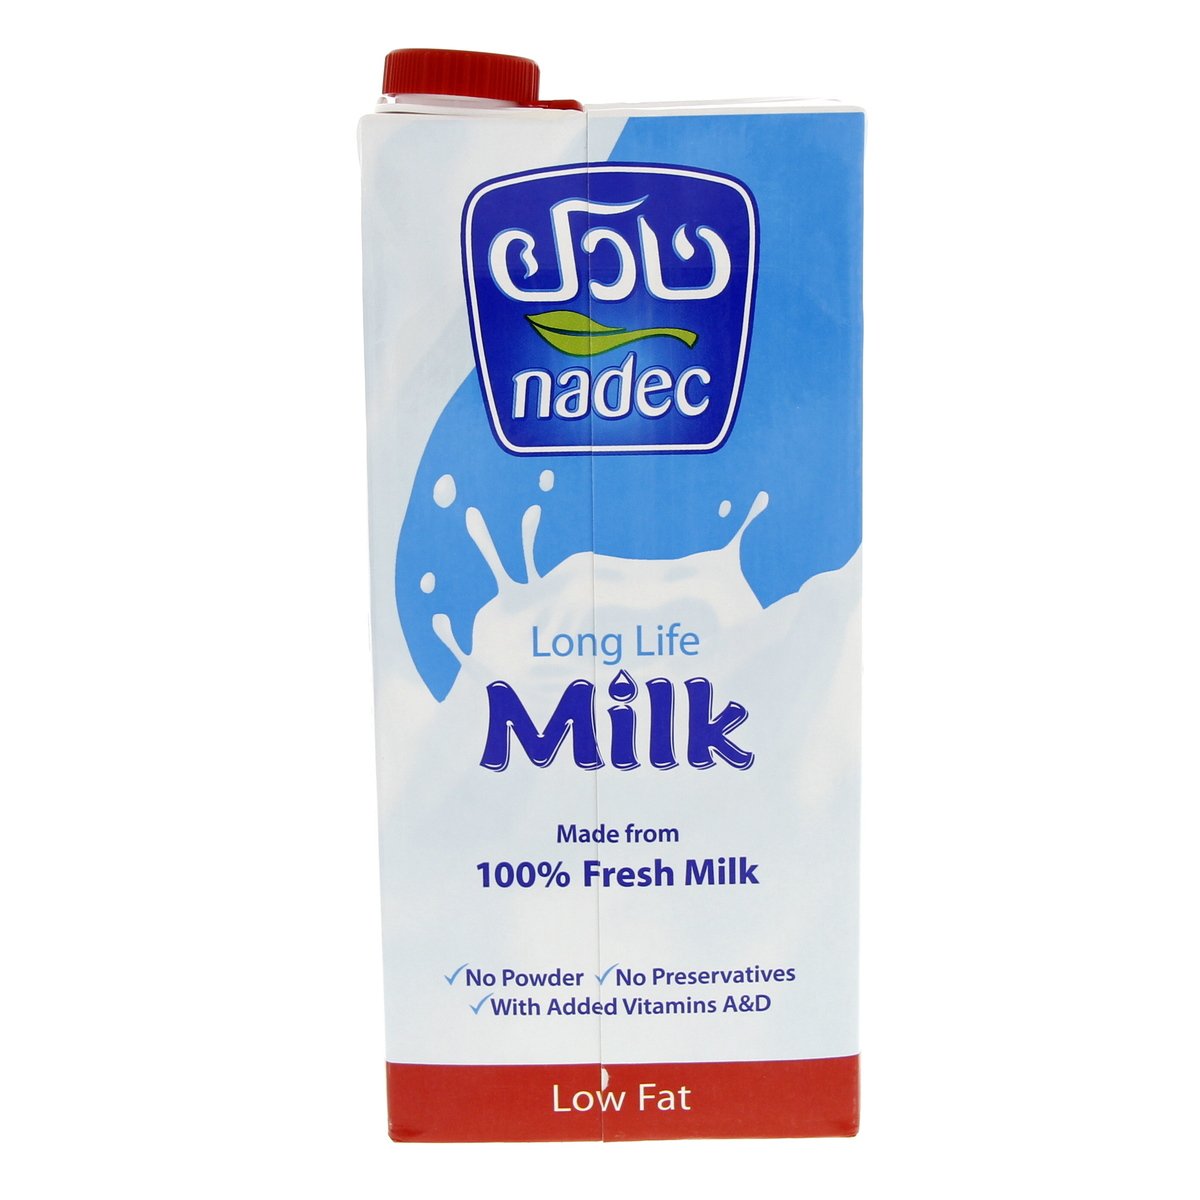 Nadec Long Life Low Fat Milk 12 x 1 Litre